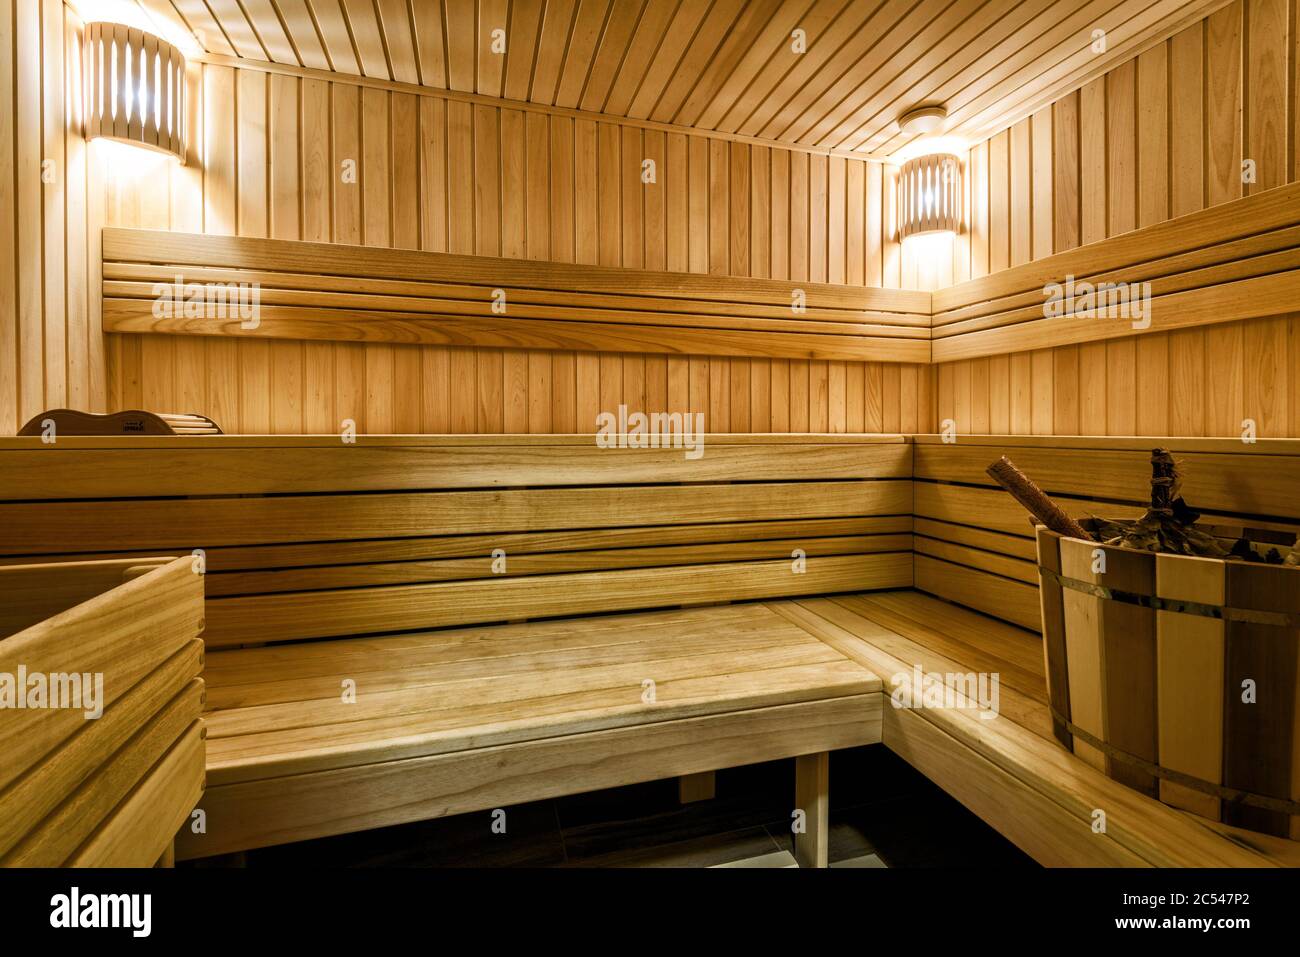 Intérieur classique du sauna en Russie. Magnifique et propre sauna en bois. Salle de bains moderne et agréable pour les soins spa. Confortable sauna finlandais dans l'hôtel ou résidence Banque D'Images